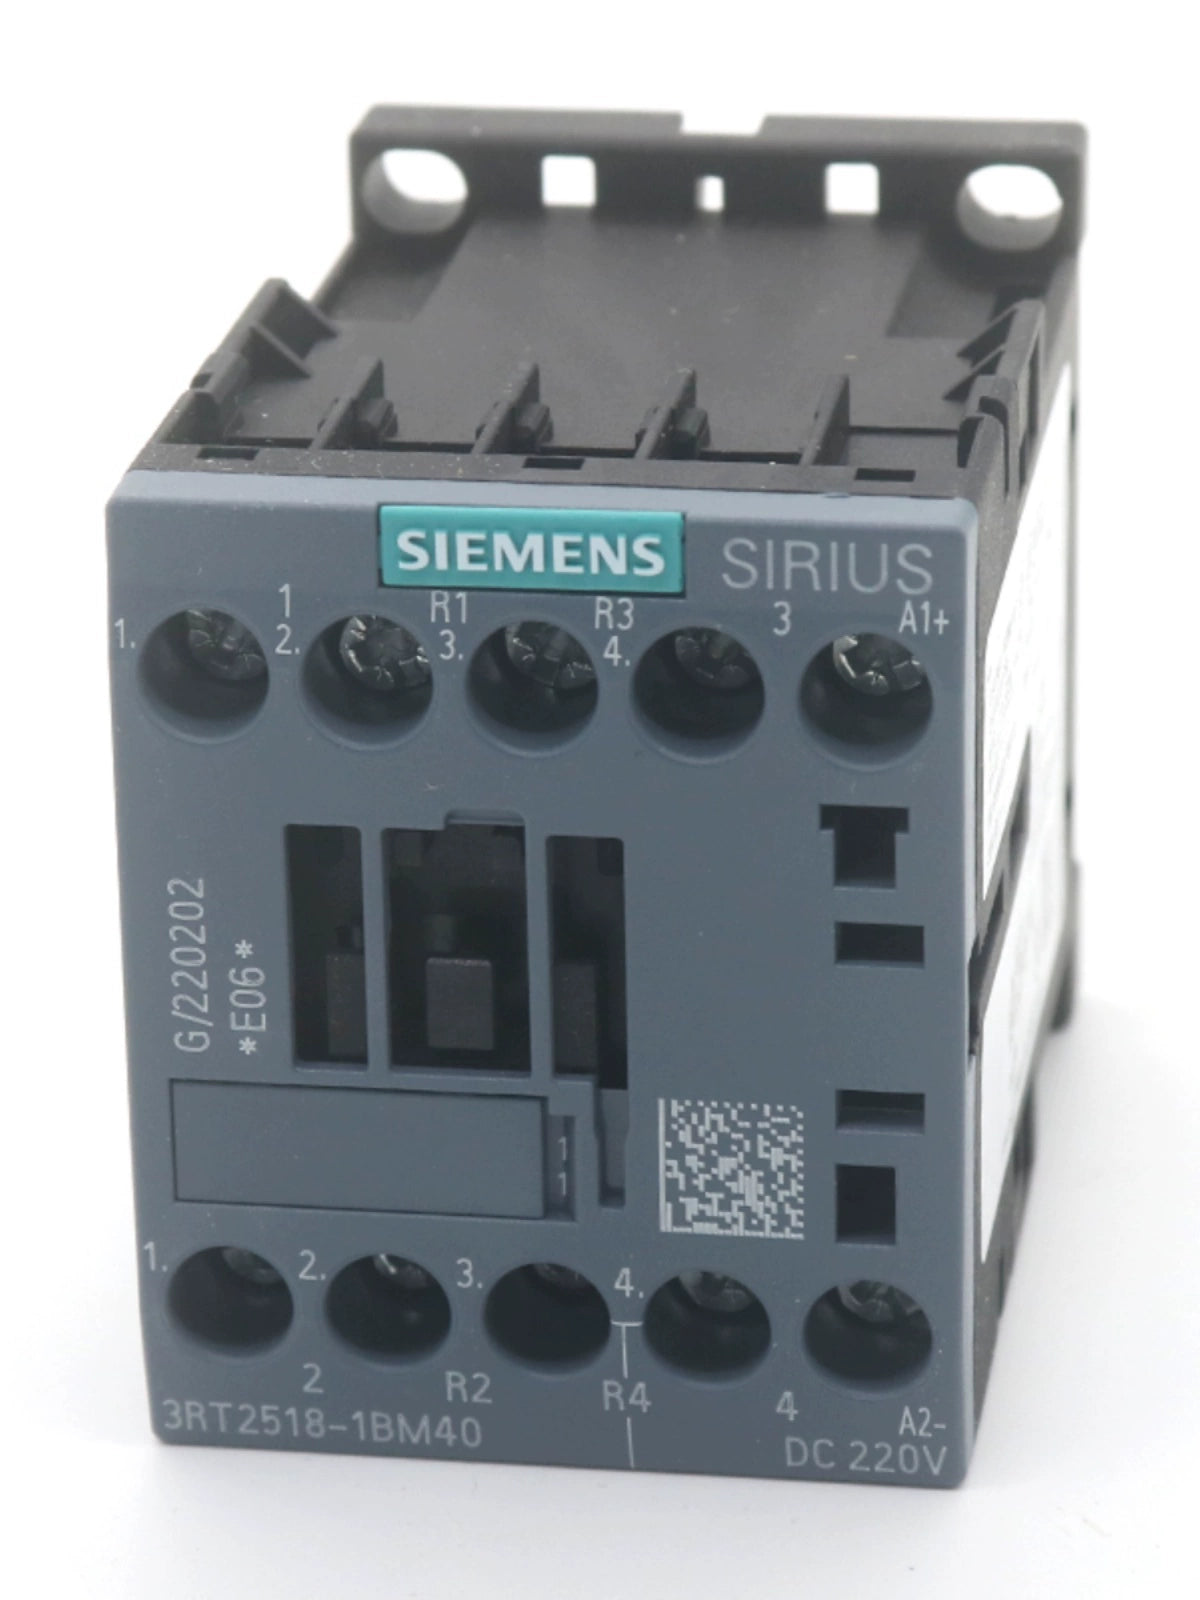 SIEMENS Elevator Contactor 3RT2518-1BM40 DC220V For KONE OTIS ThyssenKrupp